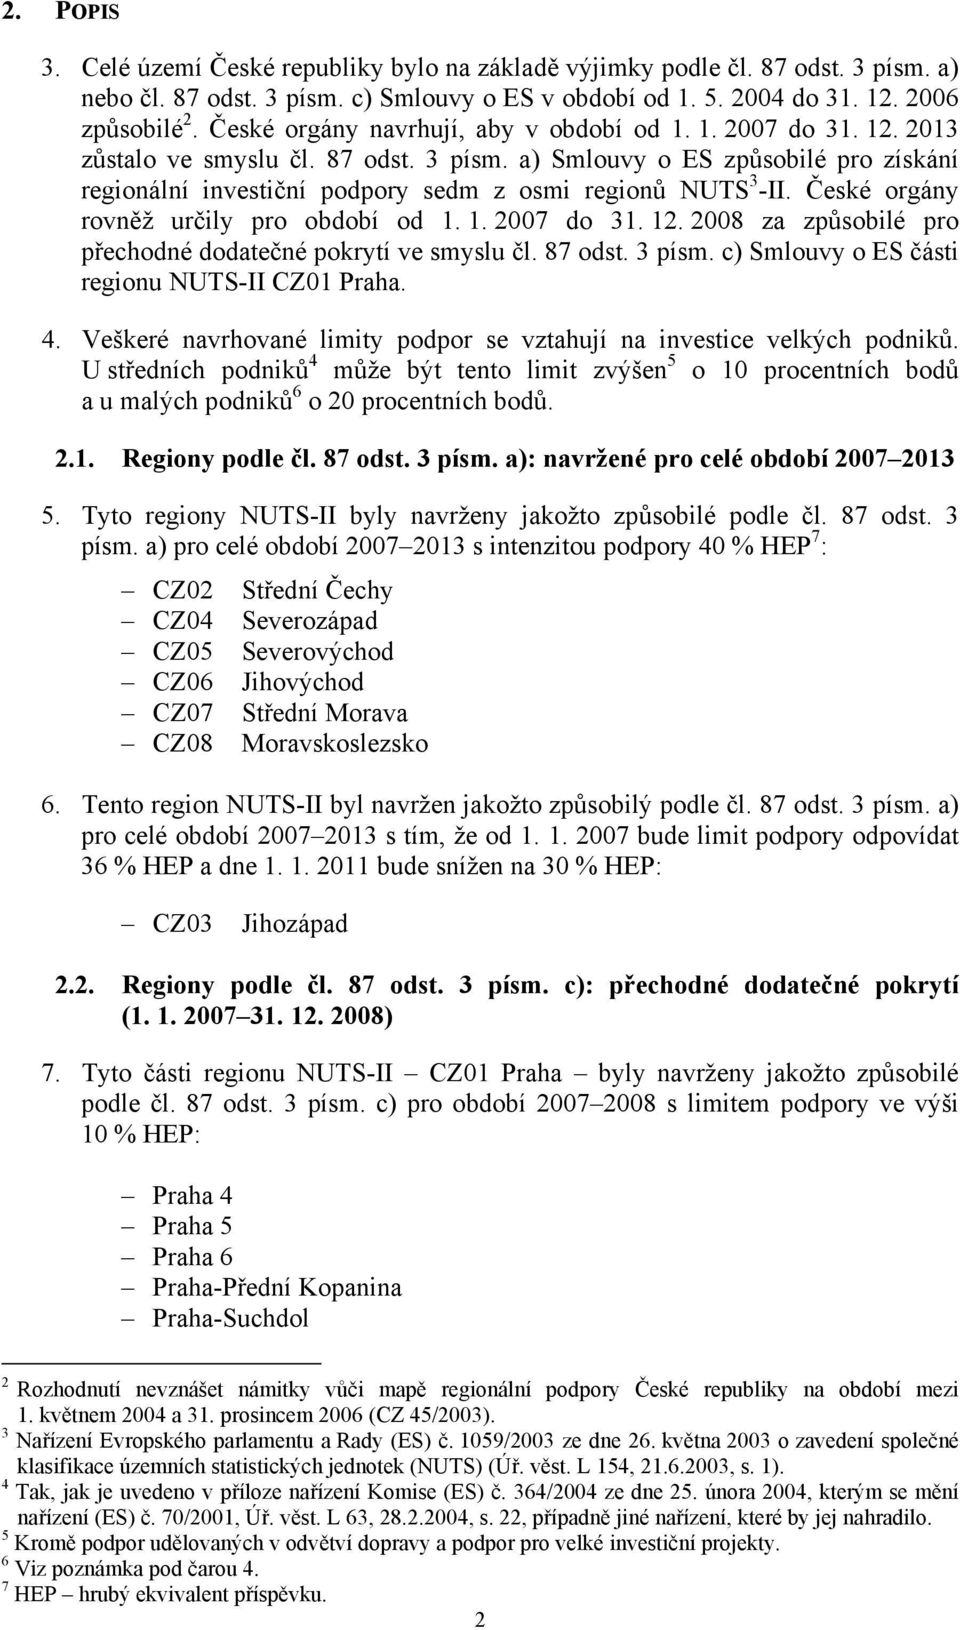 a) Smlouvy o ES způsobilé pro získání regionální investiční podpory sedm z osmi regionů NUTS 3 -II. České orgány rovněž určily pro období od 1. 1. 2007 do 31. 12.